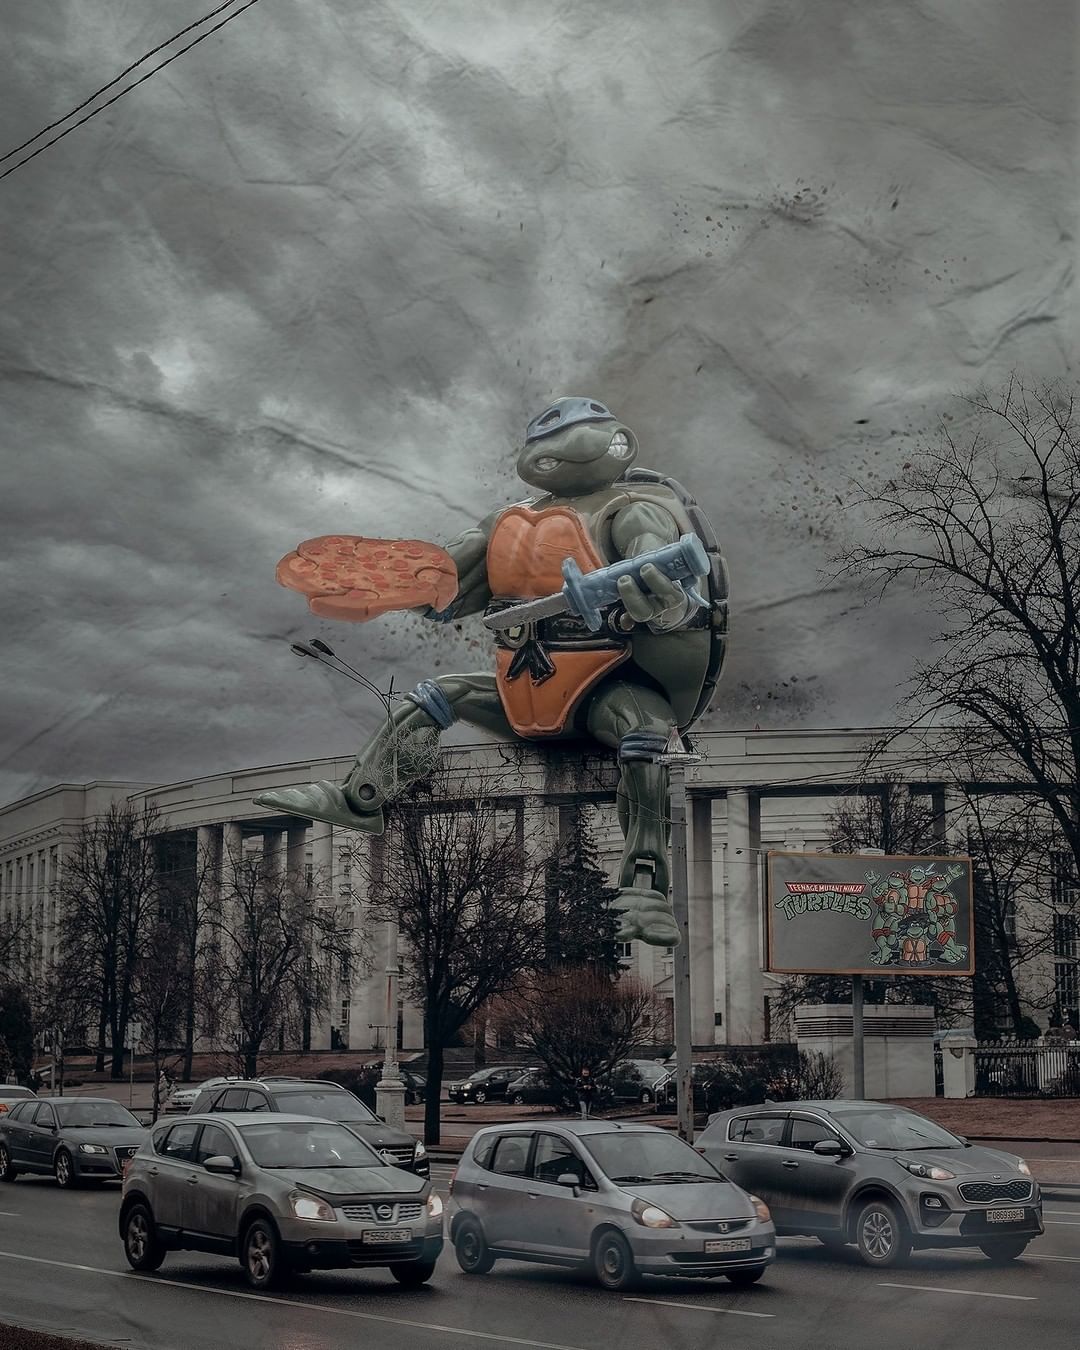 Tartaruga Ninja gigante conquista Minsk: Leonardo está explorando o mundo da arquitetura soviética em projeto de artista